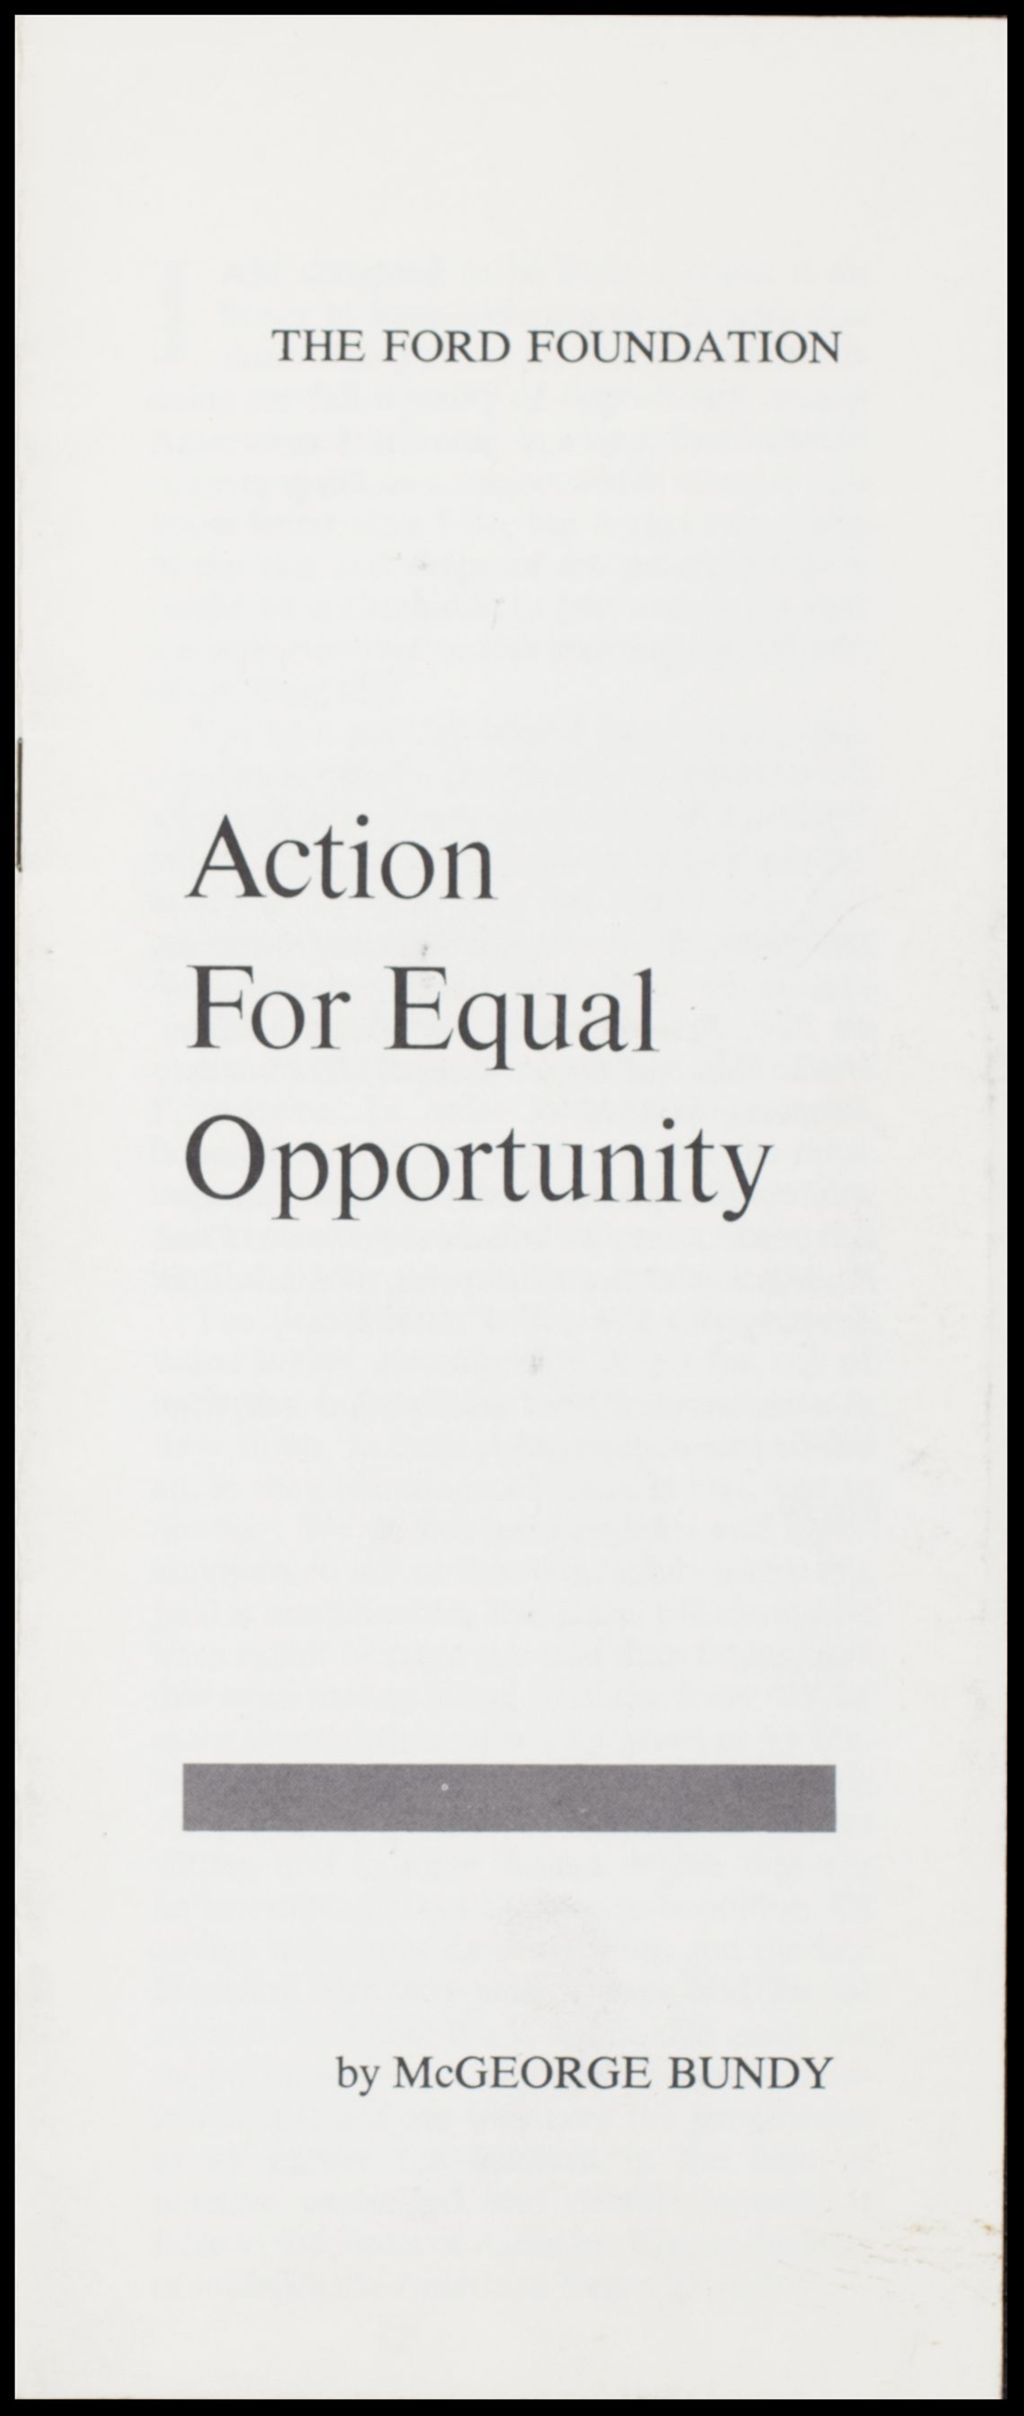 Equal Opportunity, 1966 (Folder IV-761)